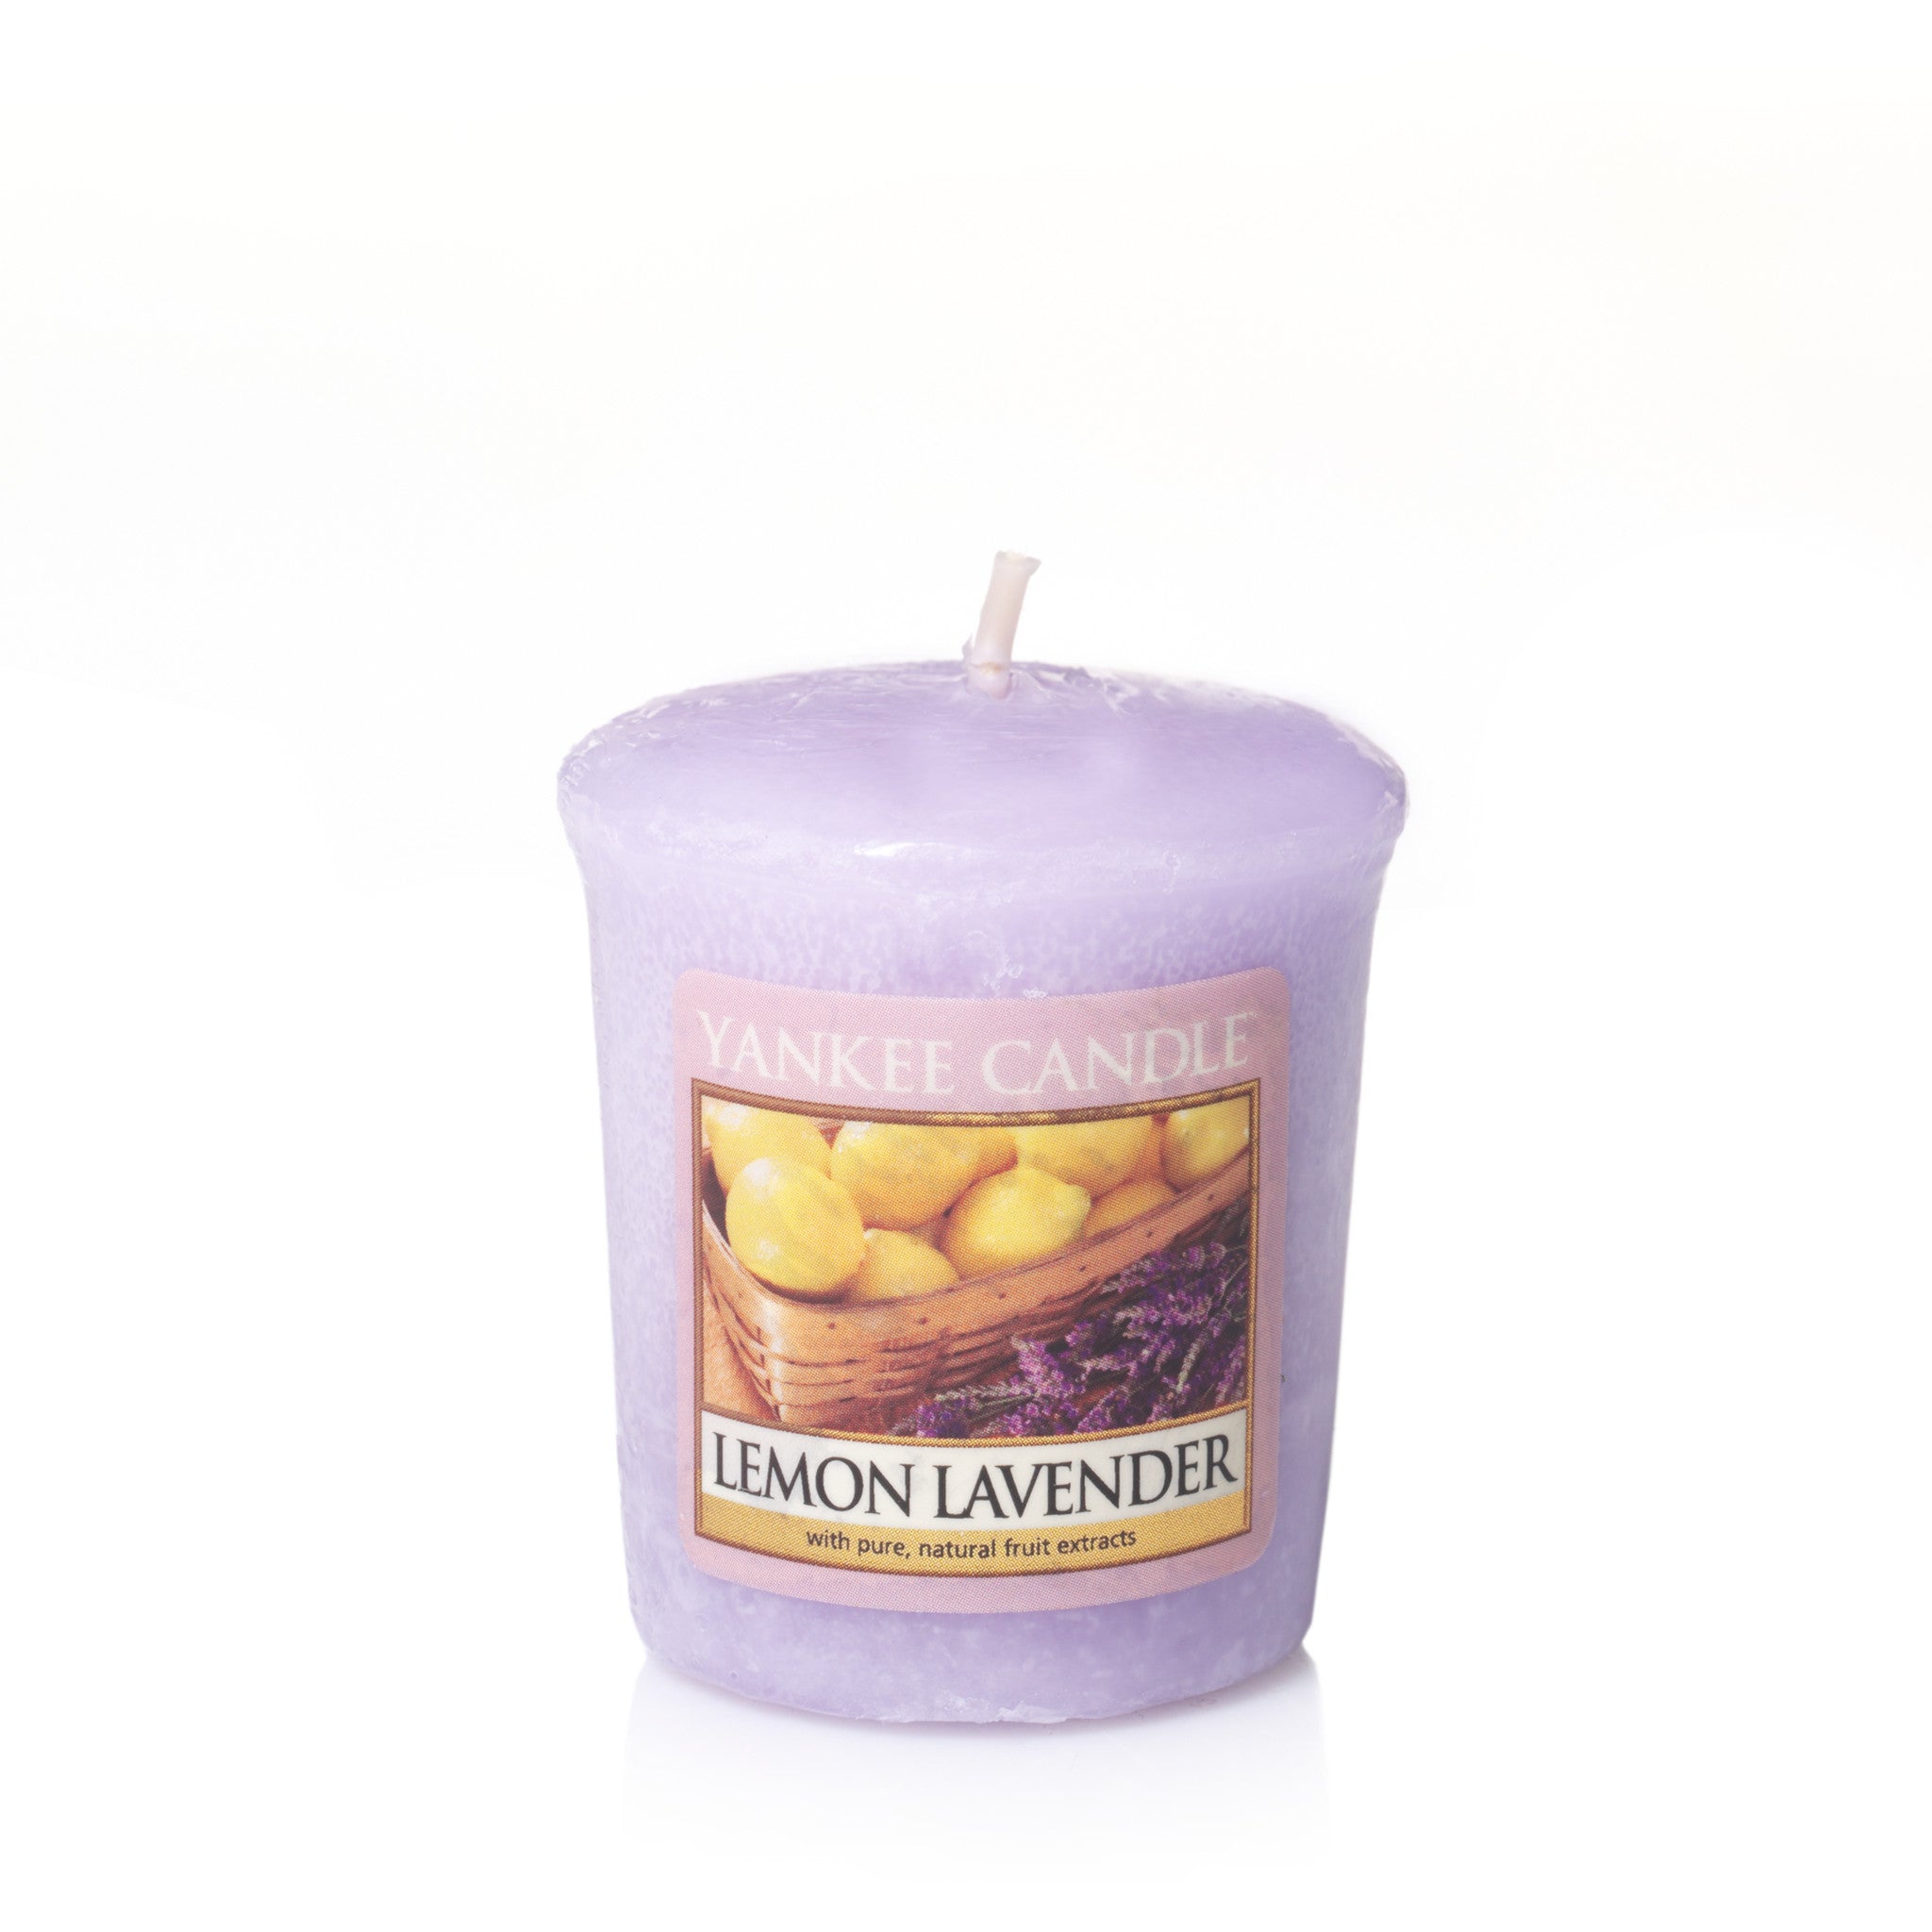 LEMON LAVENDER -Yankee Candle- Candela Sampler